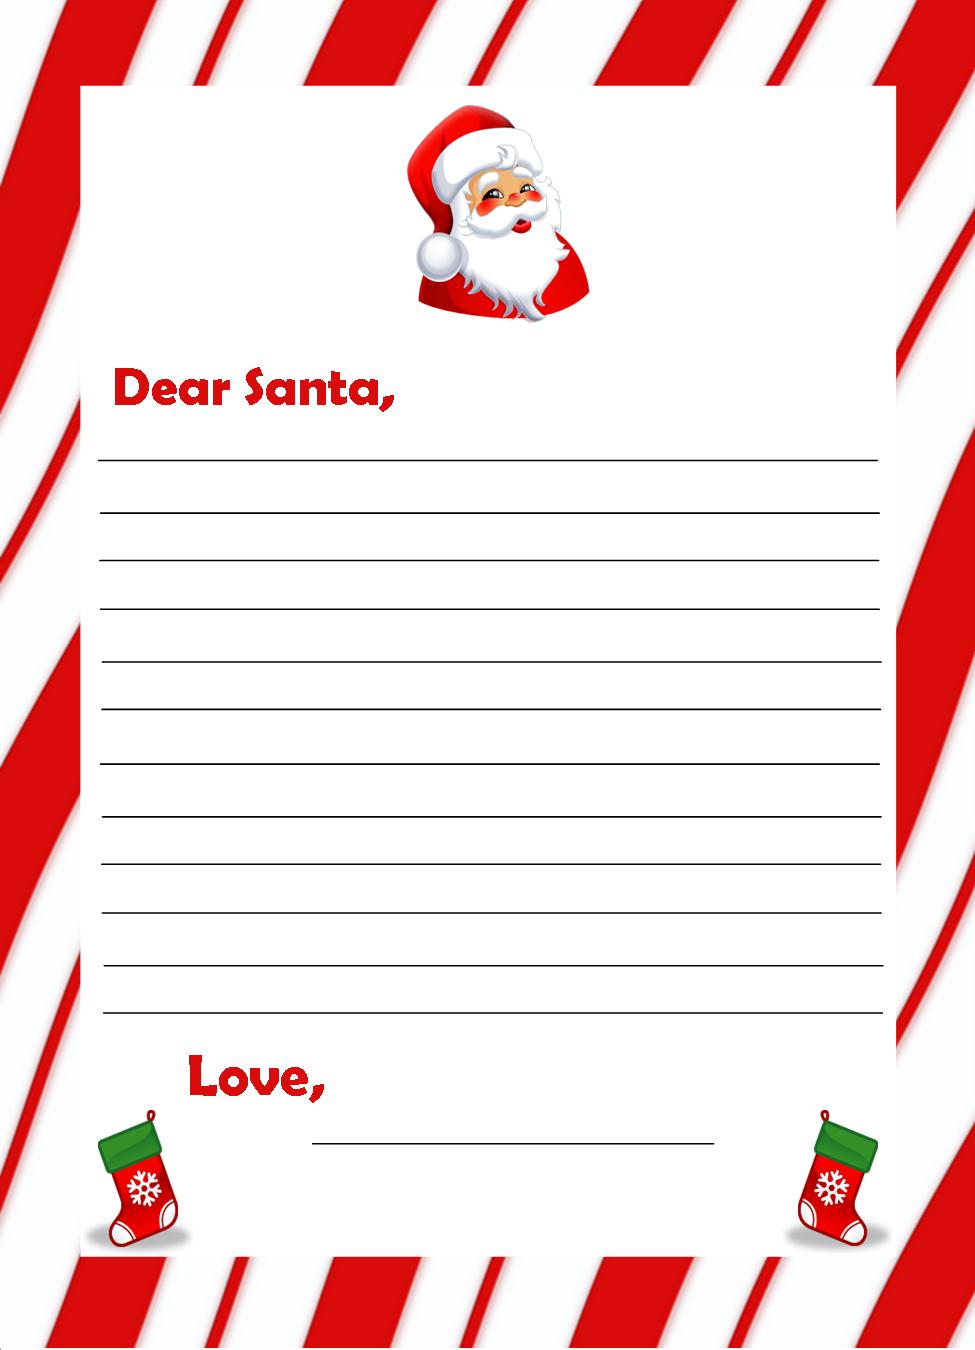 Vienna Children: Send Santa Your Wish List by Nov. 21 | Vienna, VA Patch